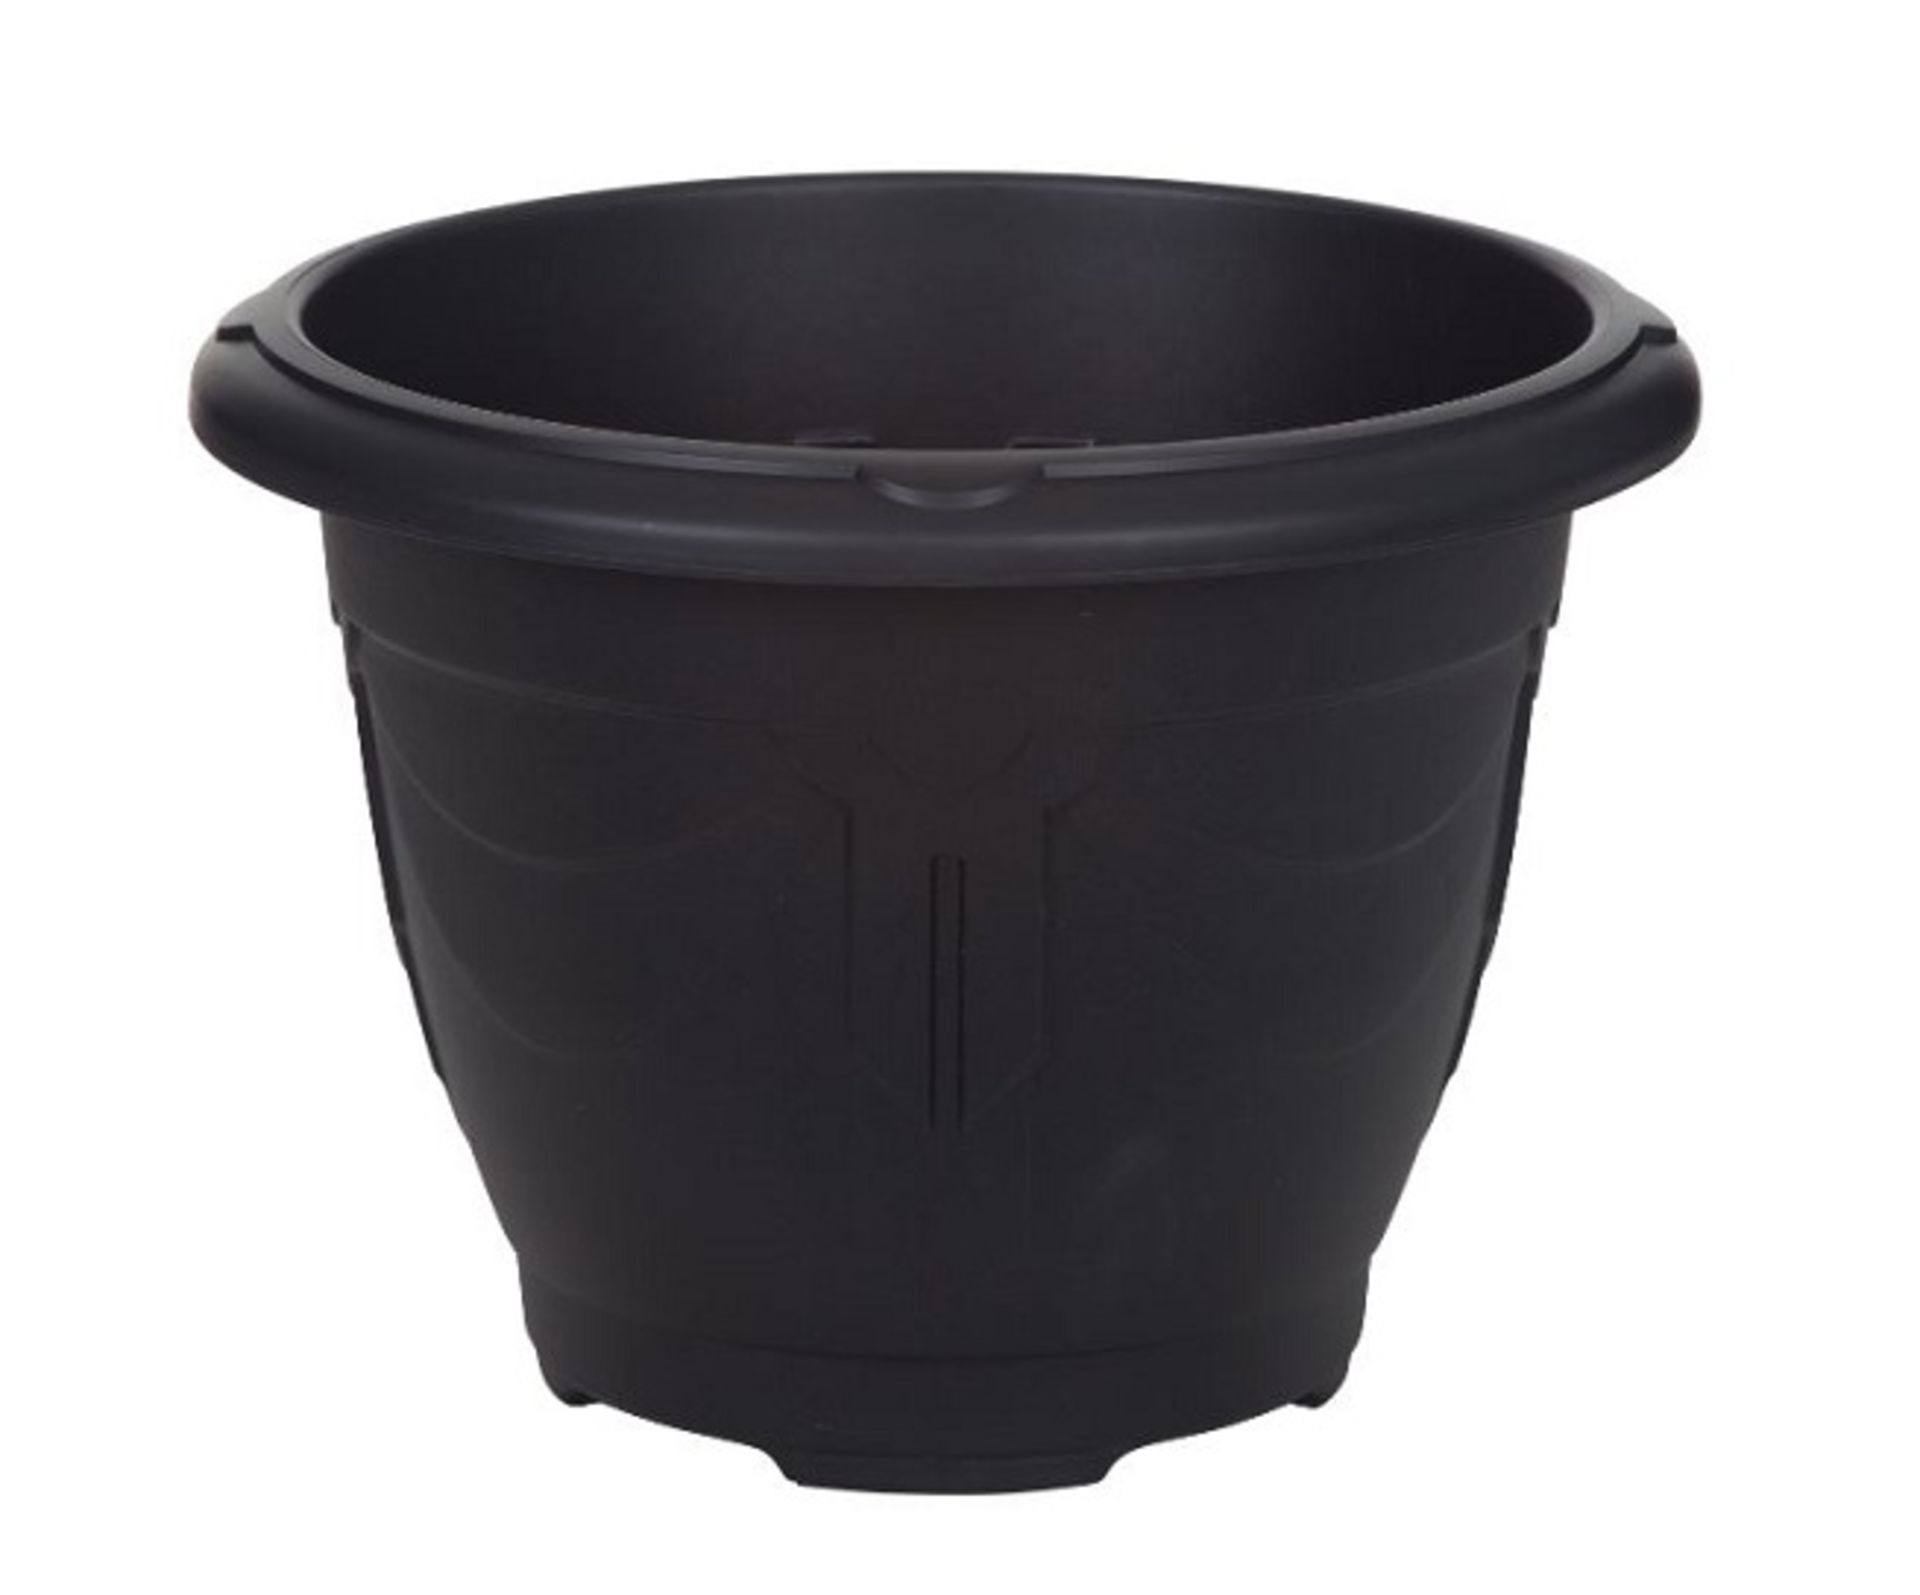 x 2 Black Round Venetian Pot Decorative Plastic Garden Flower Planter Pot 24cm